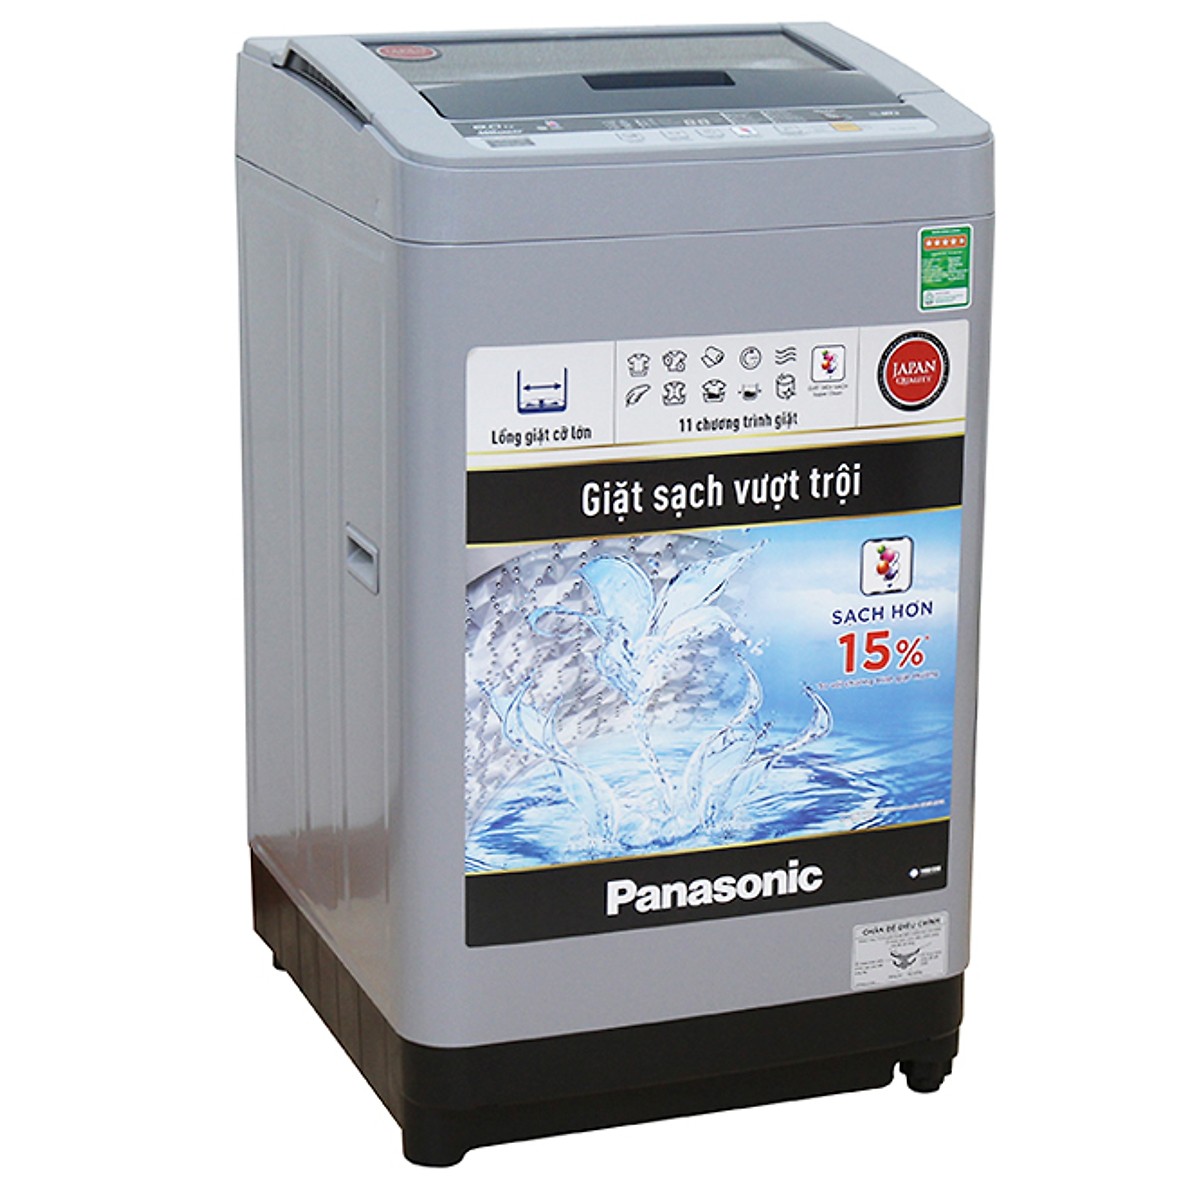 Máy Giặt Cửa Trên Panasonic NA-F80VS9GRV (8Kg) - Hàng Chính Hãng + Tặng Bình Đun Siêu Tốc